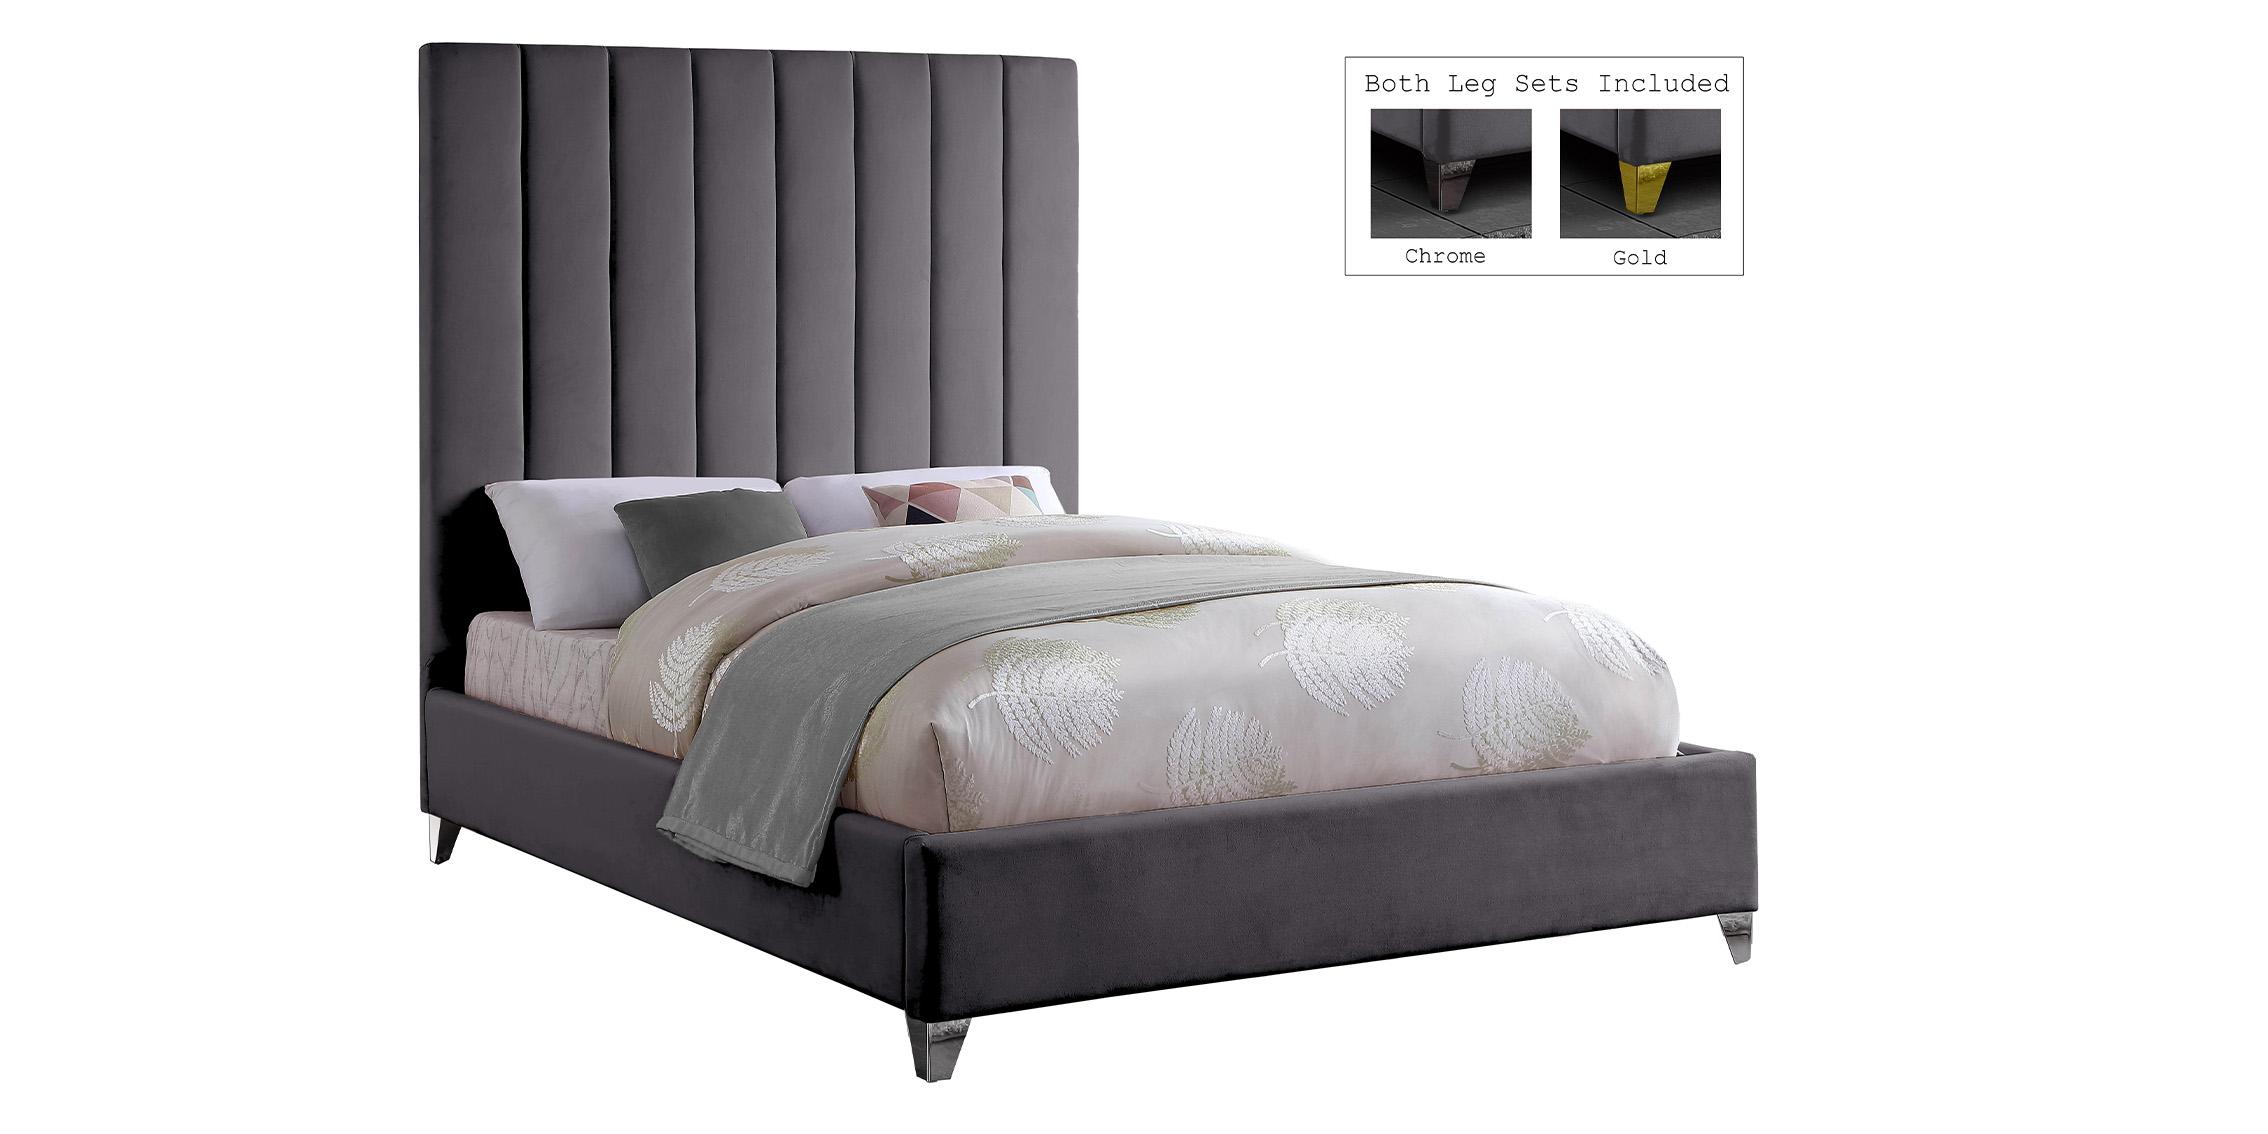 

    
ViaGrey-Q Meridian Furniture Platform Bed
